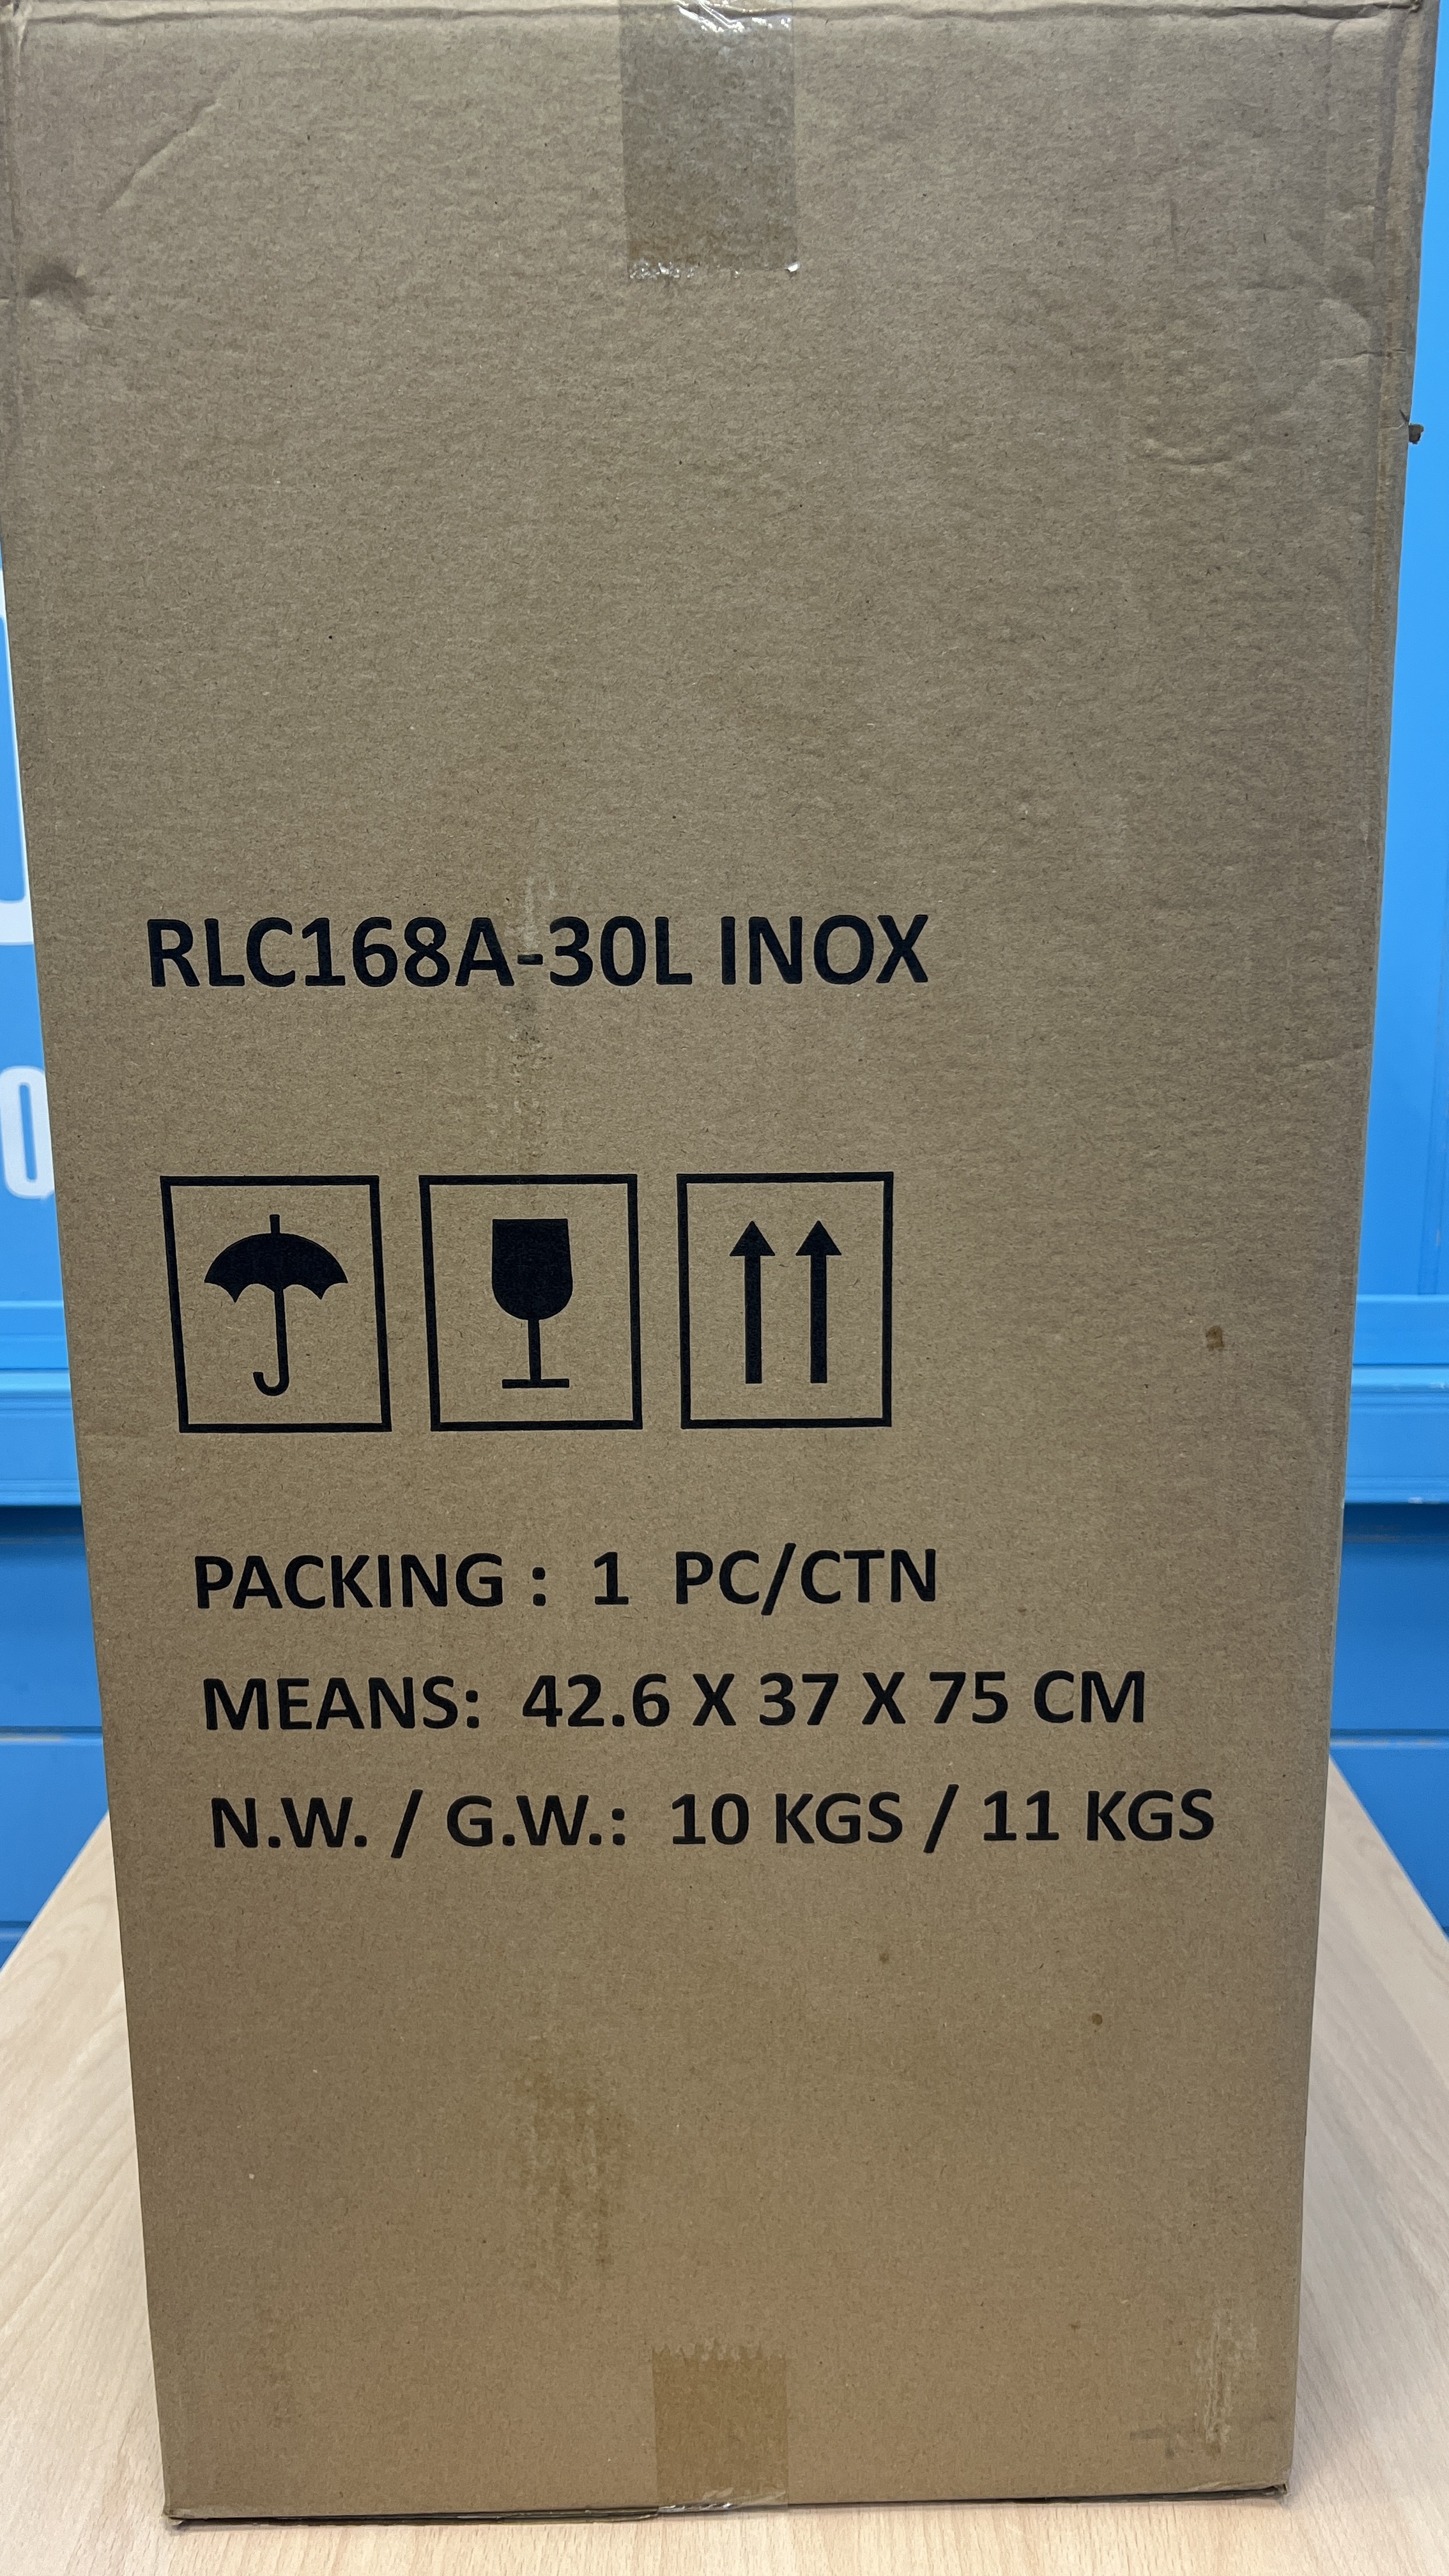 Пылесос RLC168A-30L INOX для влажной и сухой уборки с системой "Циклон" и розеткой